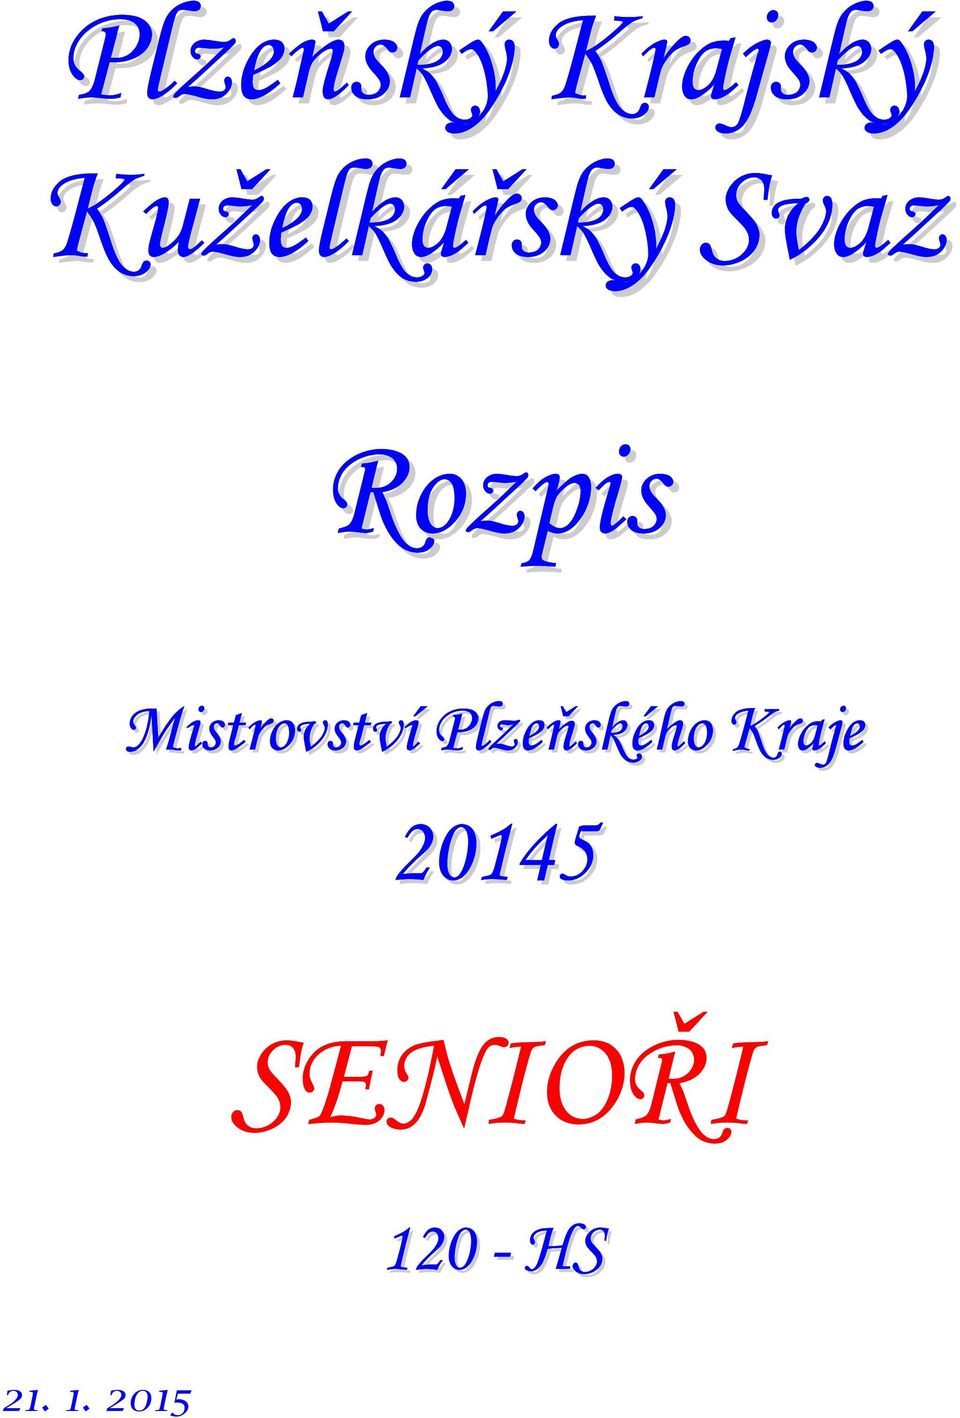 Mistrovství Plzeňského